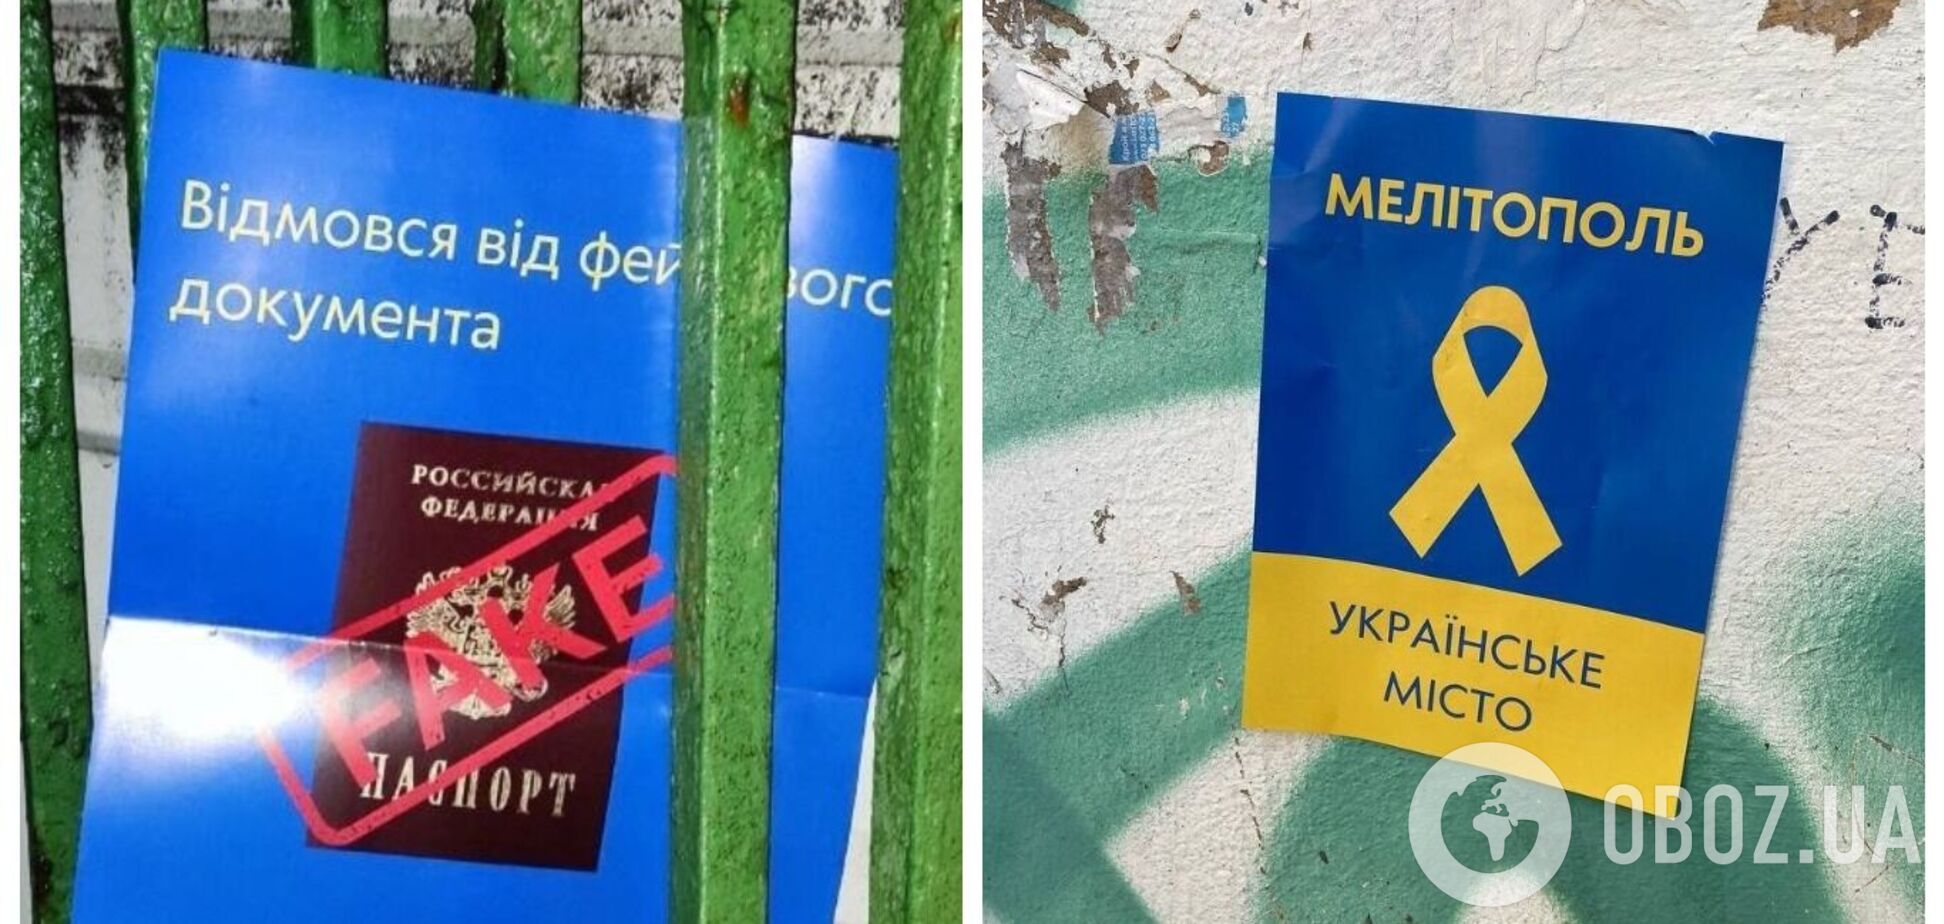 'Освобождение совсем скоро': патриоты напомнили оккупантам, что Мелитополь и Токмак – это Украина. Фото